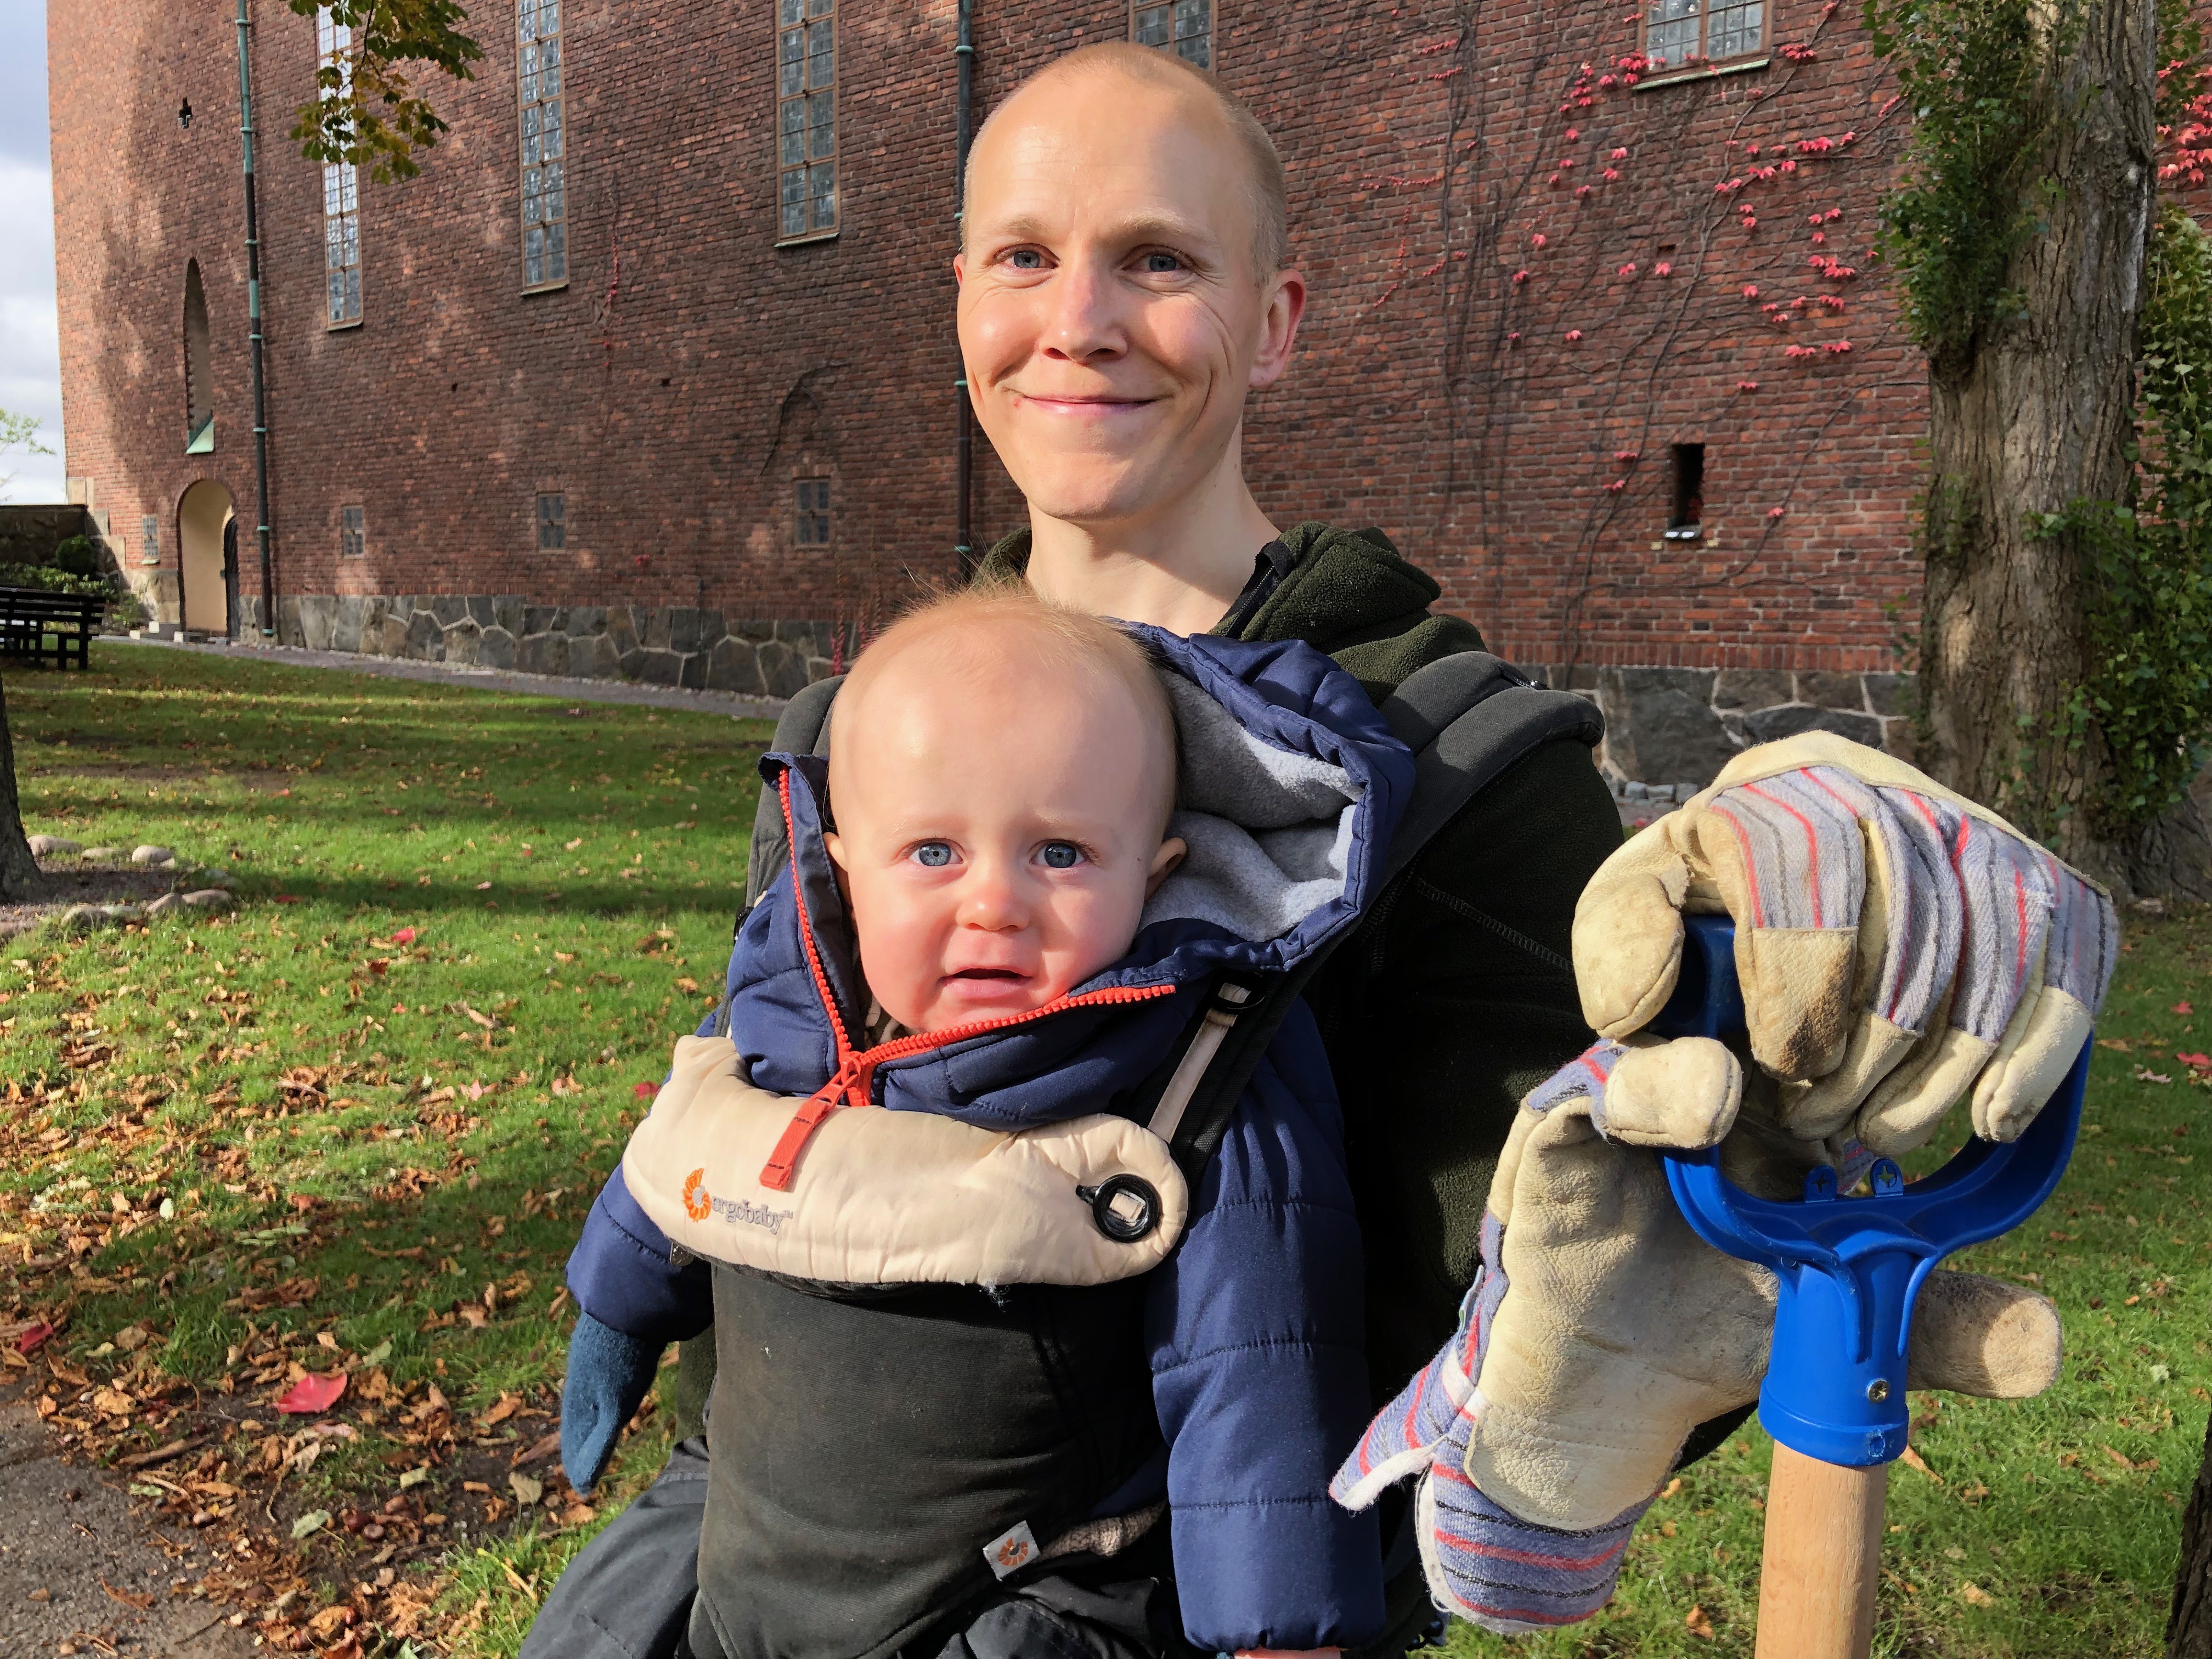 En person sitter och har en bebis i sitt knä och ett spadhandtag i ena handen som är i en handske. Det är en stor byggnad, samt gräs och löv i bakgrunden.  